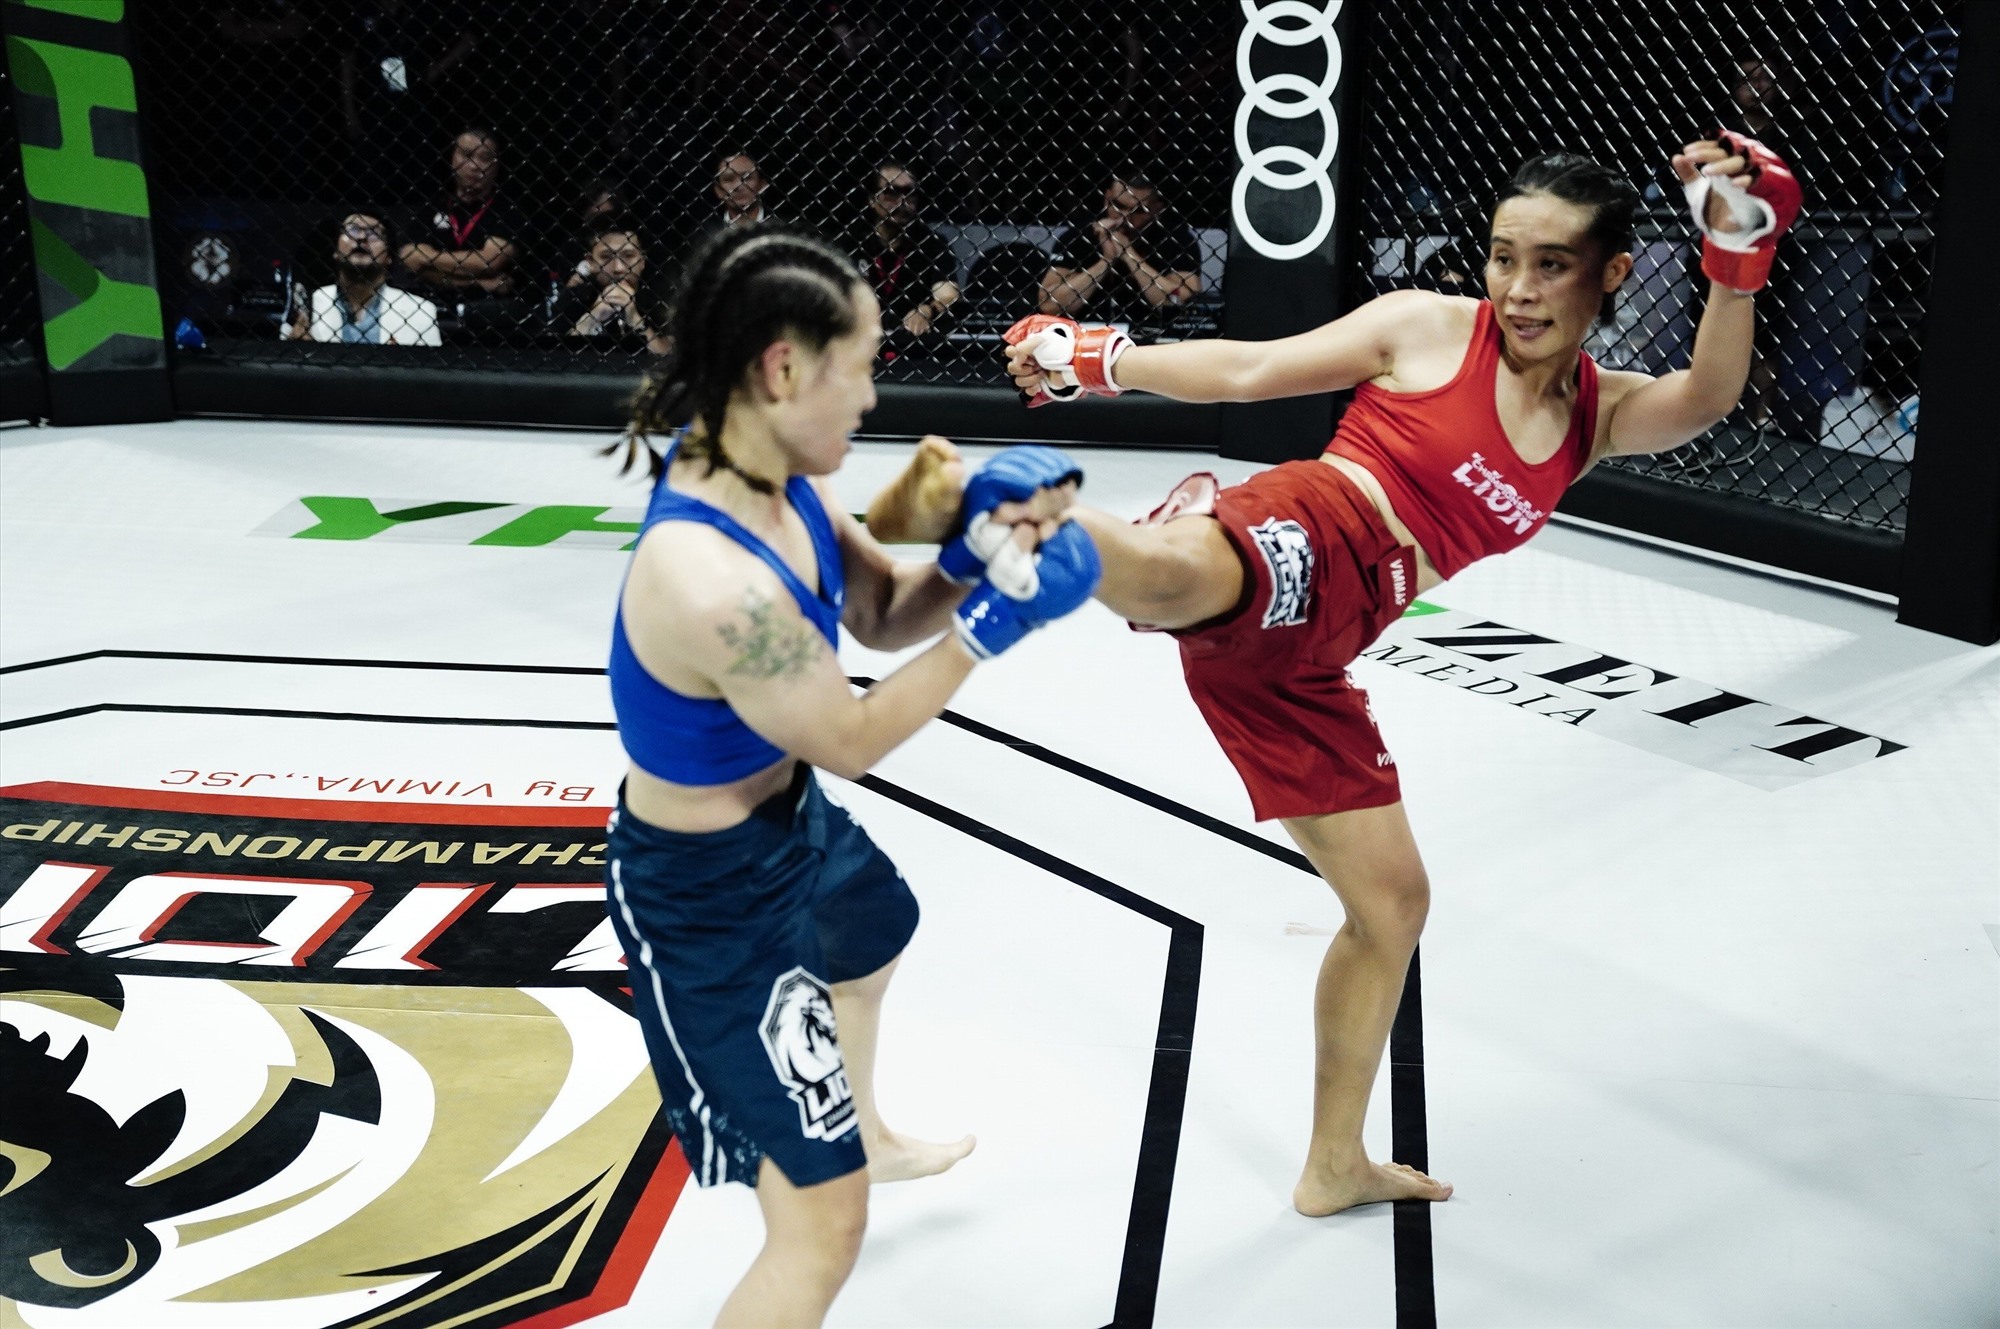 Ở hạng 52kg nữ, Hồ Thị Ngọc Bích (đỏ) thắng Đỗ Thị Ngọc Hân (xanh) bằng kỹ thuật siết cổ rear naked choke ở thời điểm 3 phút 37 giây hiệp 1.